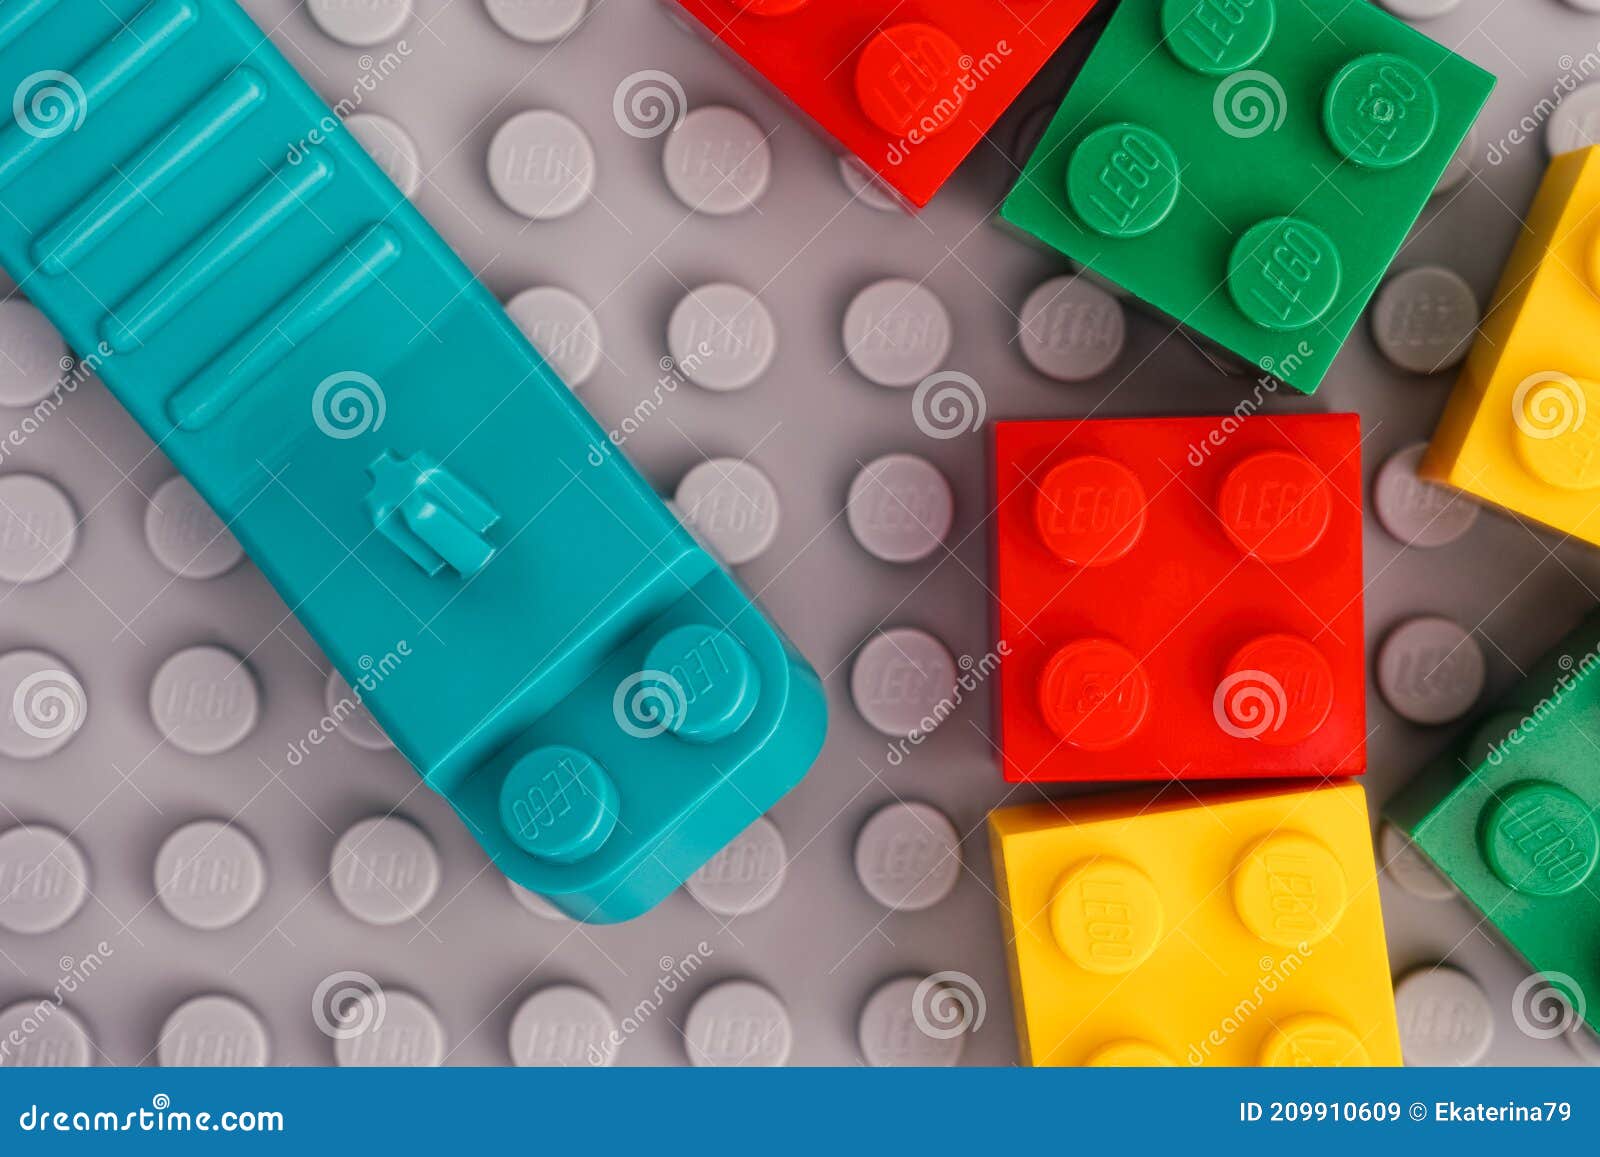 Separador De Ladrillo De Teca Lego Con Algunos Ladrillos En Placa Base Gris  Imagen de archivo editorial - Imagen de verde, editorial: 209910609